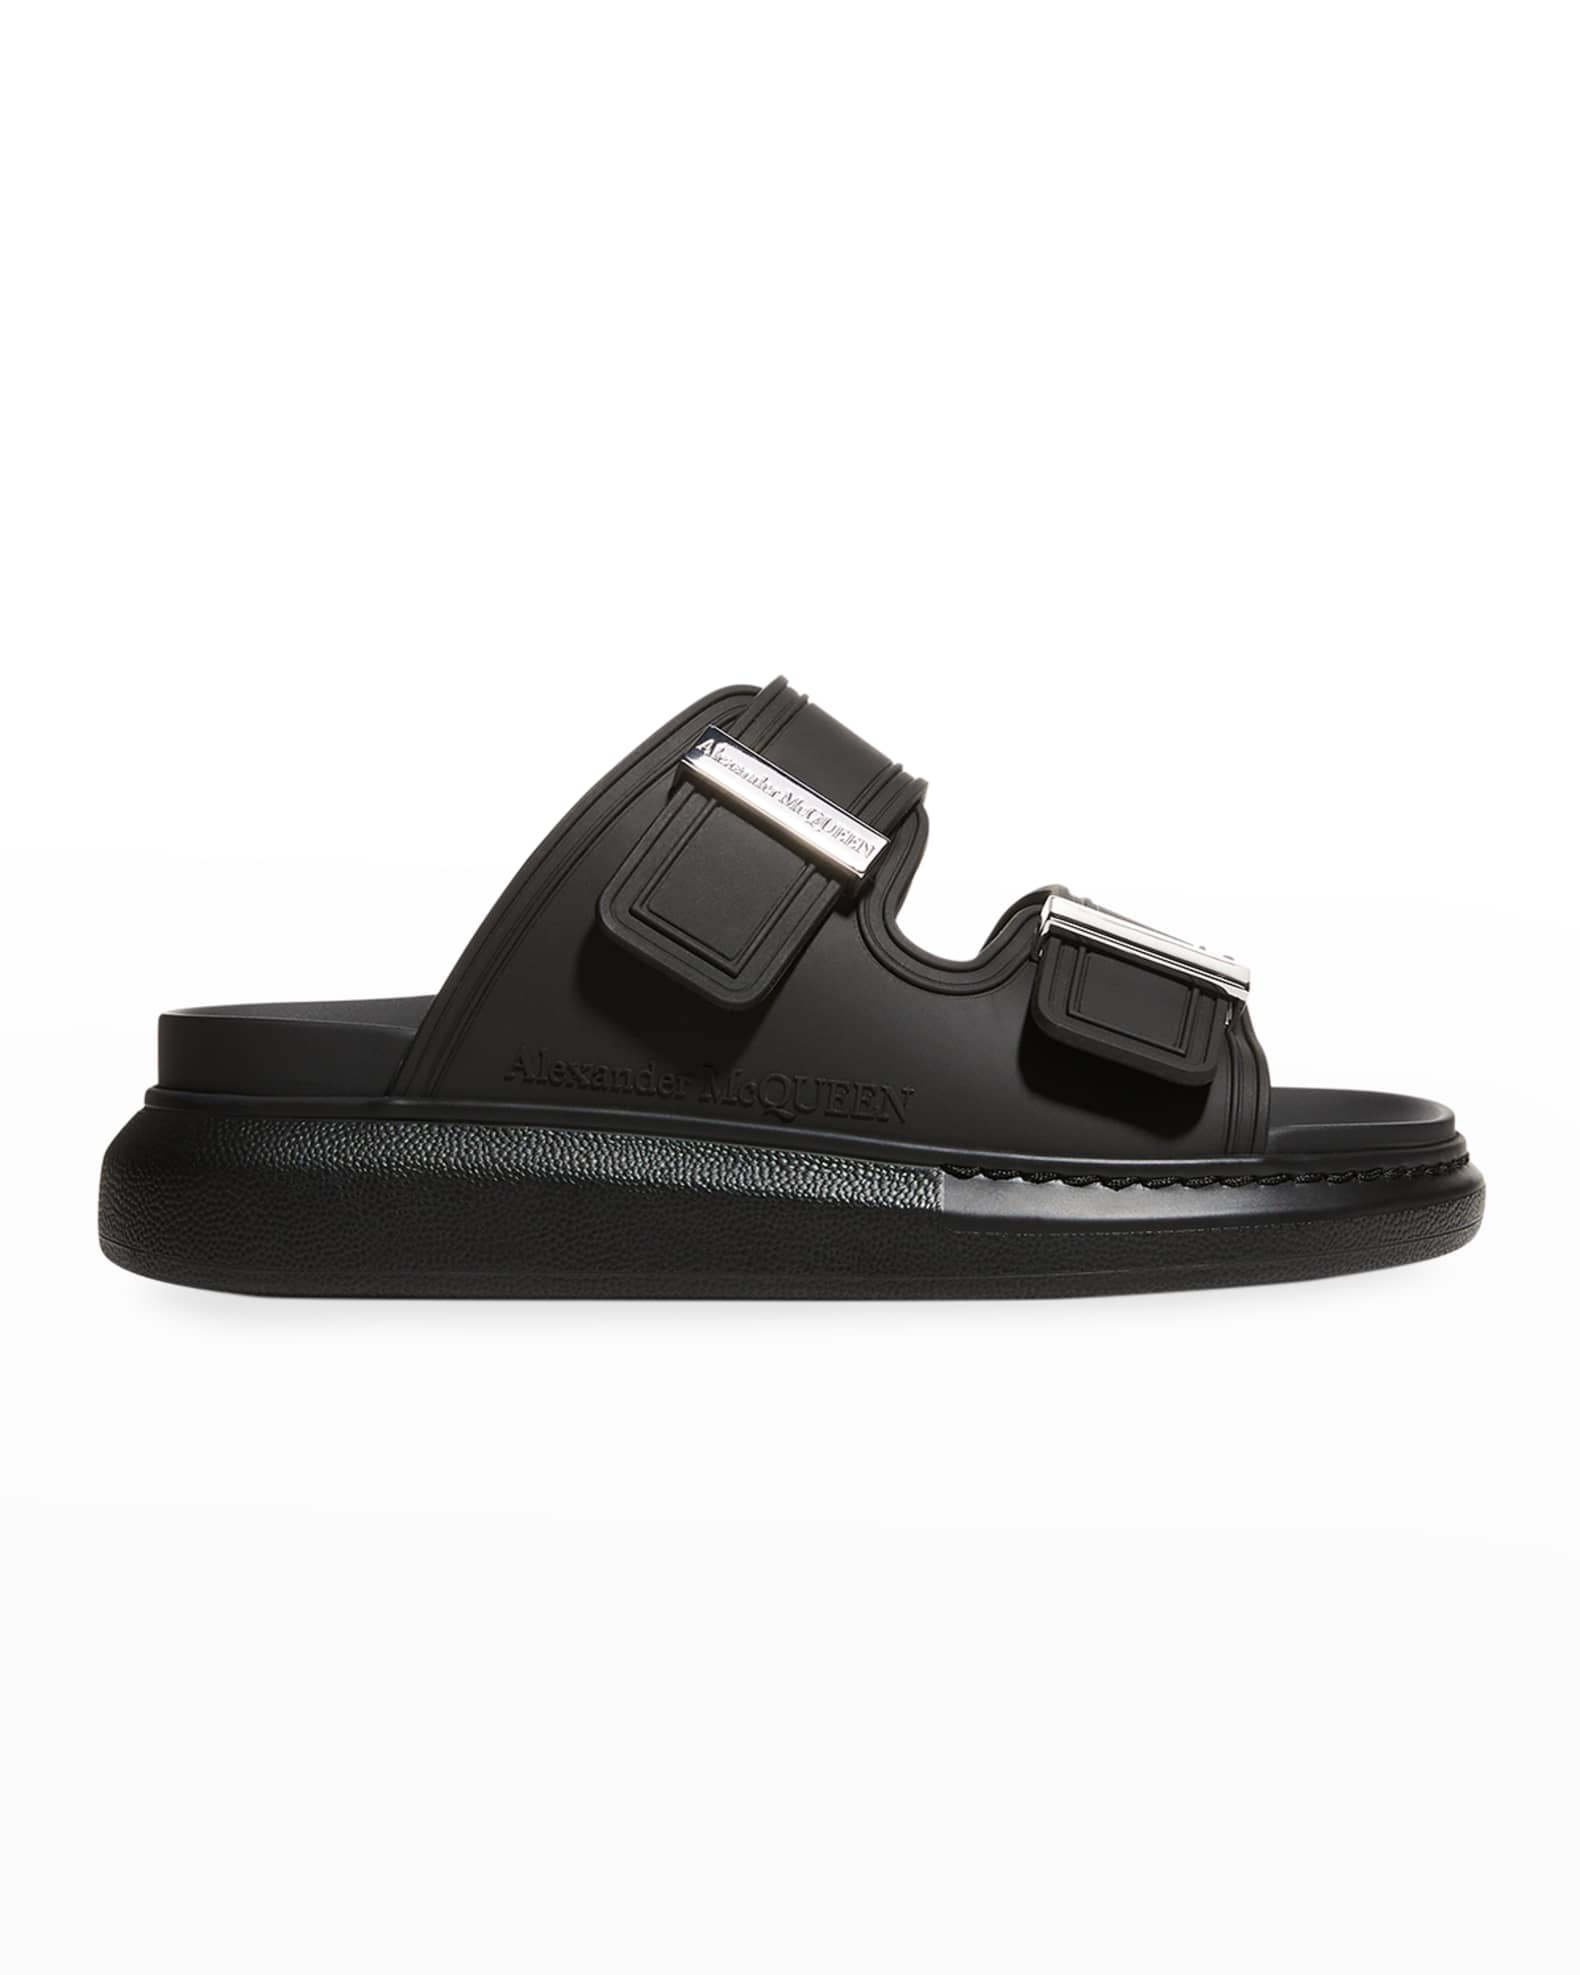 Alexander McQueen Hybrid Slide Sandals | Neiman Marcus